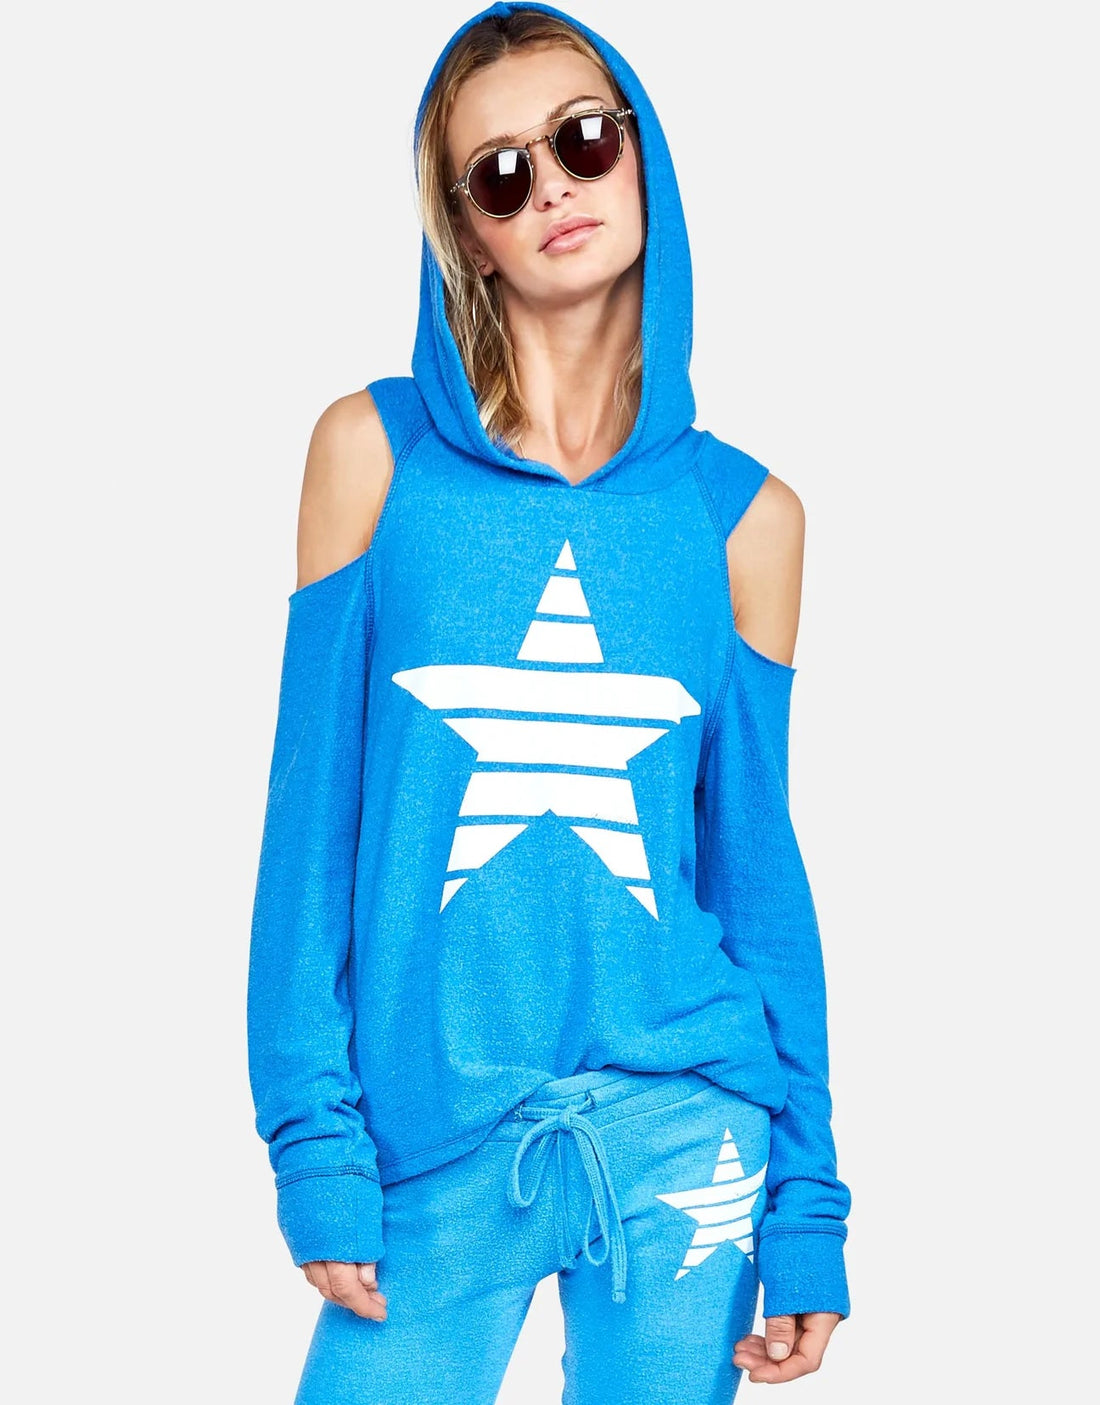 Shop Lauren Moshi Berlin Classic Stripe Star Hoodie - Premium Sweatshirt from Lauren Moshi Online now at Spoiled Brat 